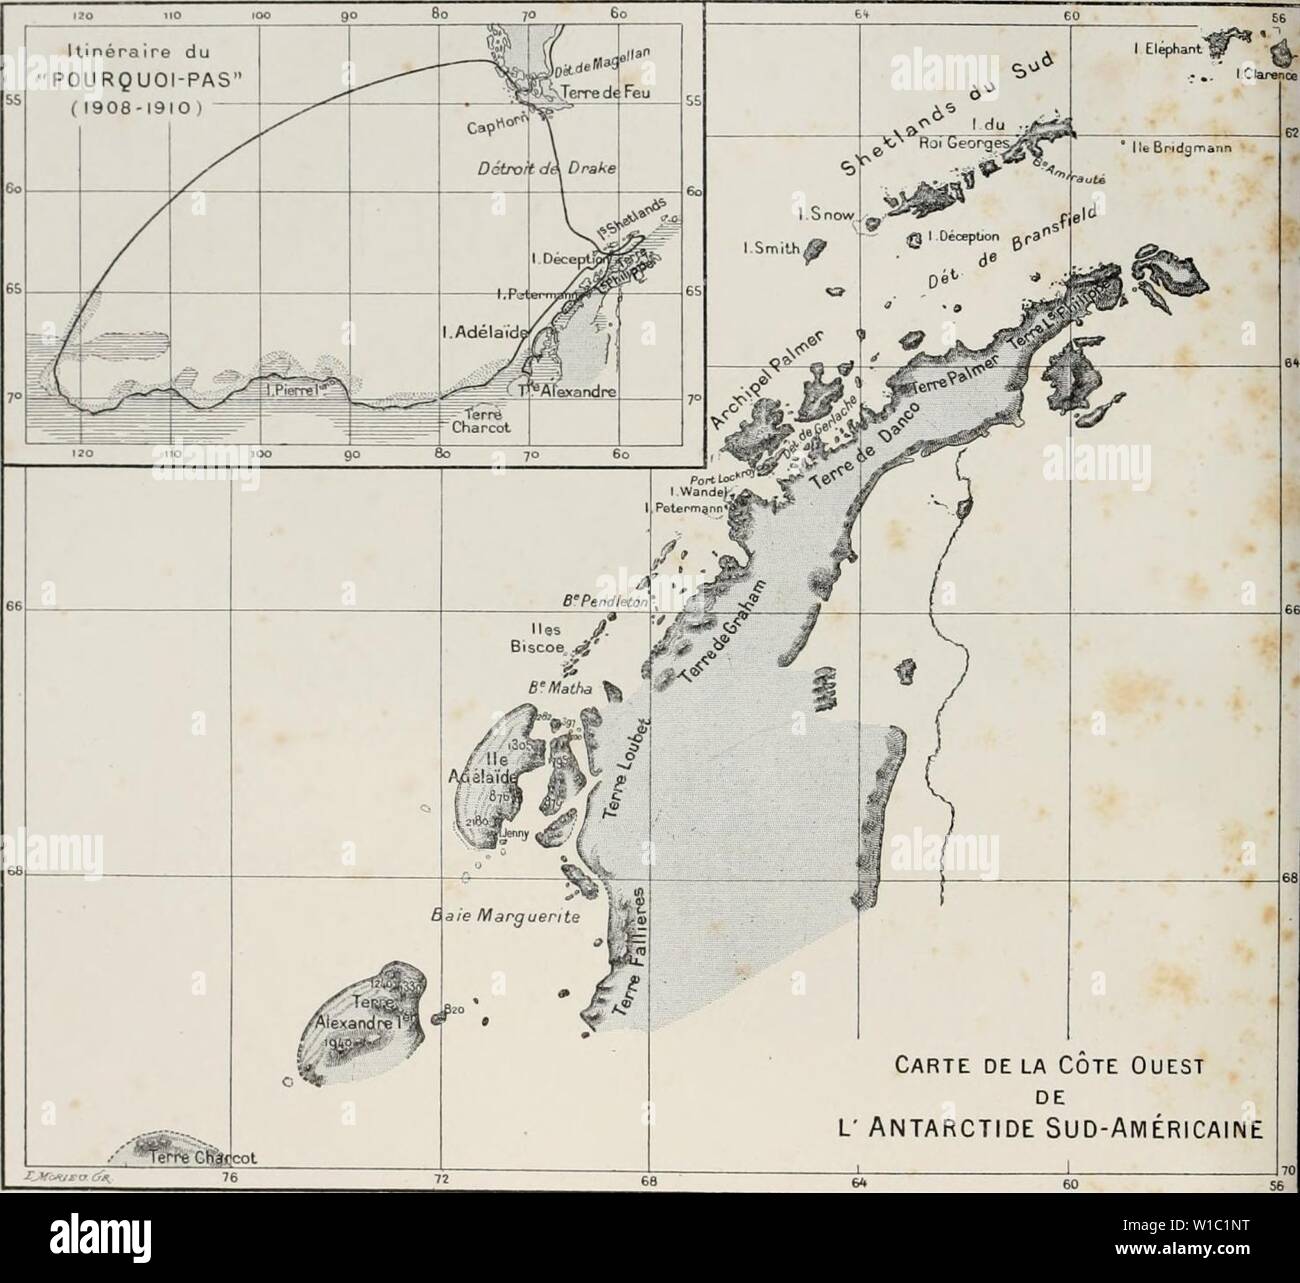 Image d'archive à partir de la page 5 de la deuxième expédition antarctique francaise (1908-1910). Moi expÃdition¨DeuxiÃ antarctique francaise (1908-1910) . deuximeexpdi1911fran Année : 1911 Carte delÃ Cote Ouest DE L' ANTARCTIDE SUD-AMÃRICAINE CARTE DES RÃGIONS ET PARCOURUES PAR L'EXPÃDITION RELEVÃES MEMBRES DE LETAT MAJOR ' POURQUOI PAS ' J.-B. M. CHARCOT Hydrographie BONGRAIN, Sismographie, la gravitation terrestre, les observations astronomiques. L. CiAIN Zoologie (Spongiaires, Echinodermes. Arthropodes. Oiseaux et cial& parasites) plancton, Botanique. R.-E. MarÃes Tofographie GODFROY, cÃ'tiÃ¨re. Chimie de Tai Banque D'Images